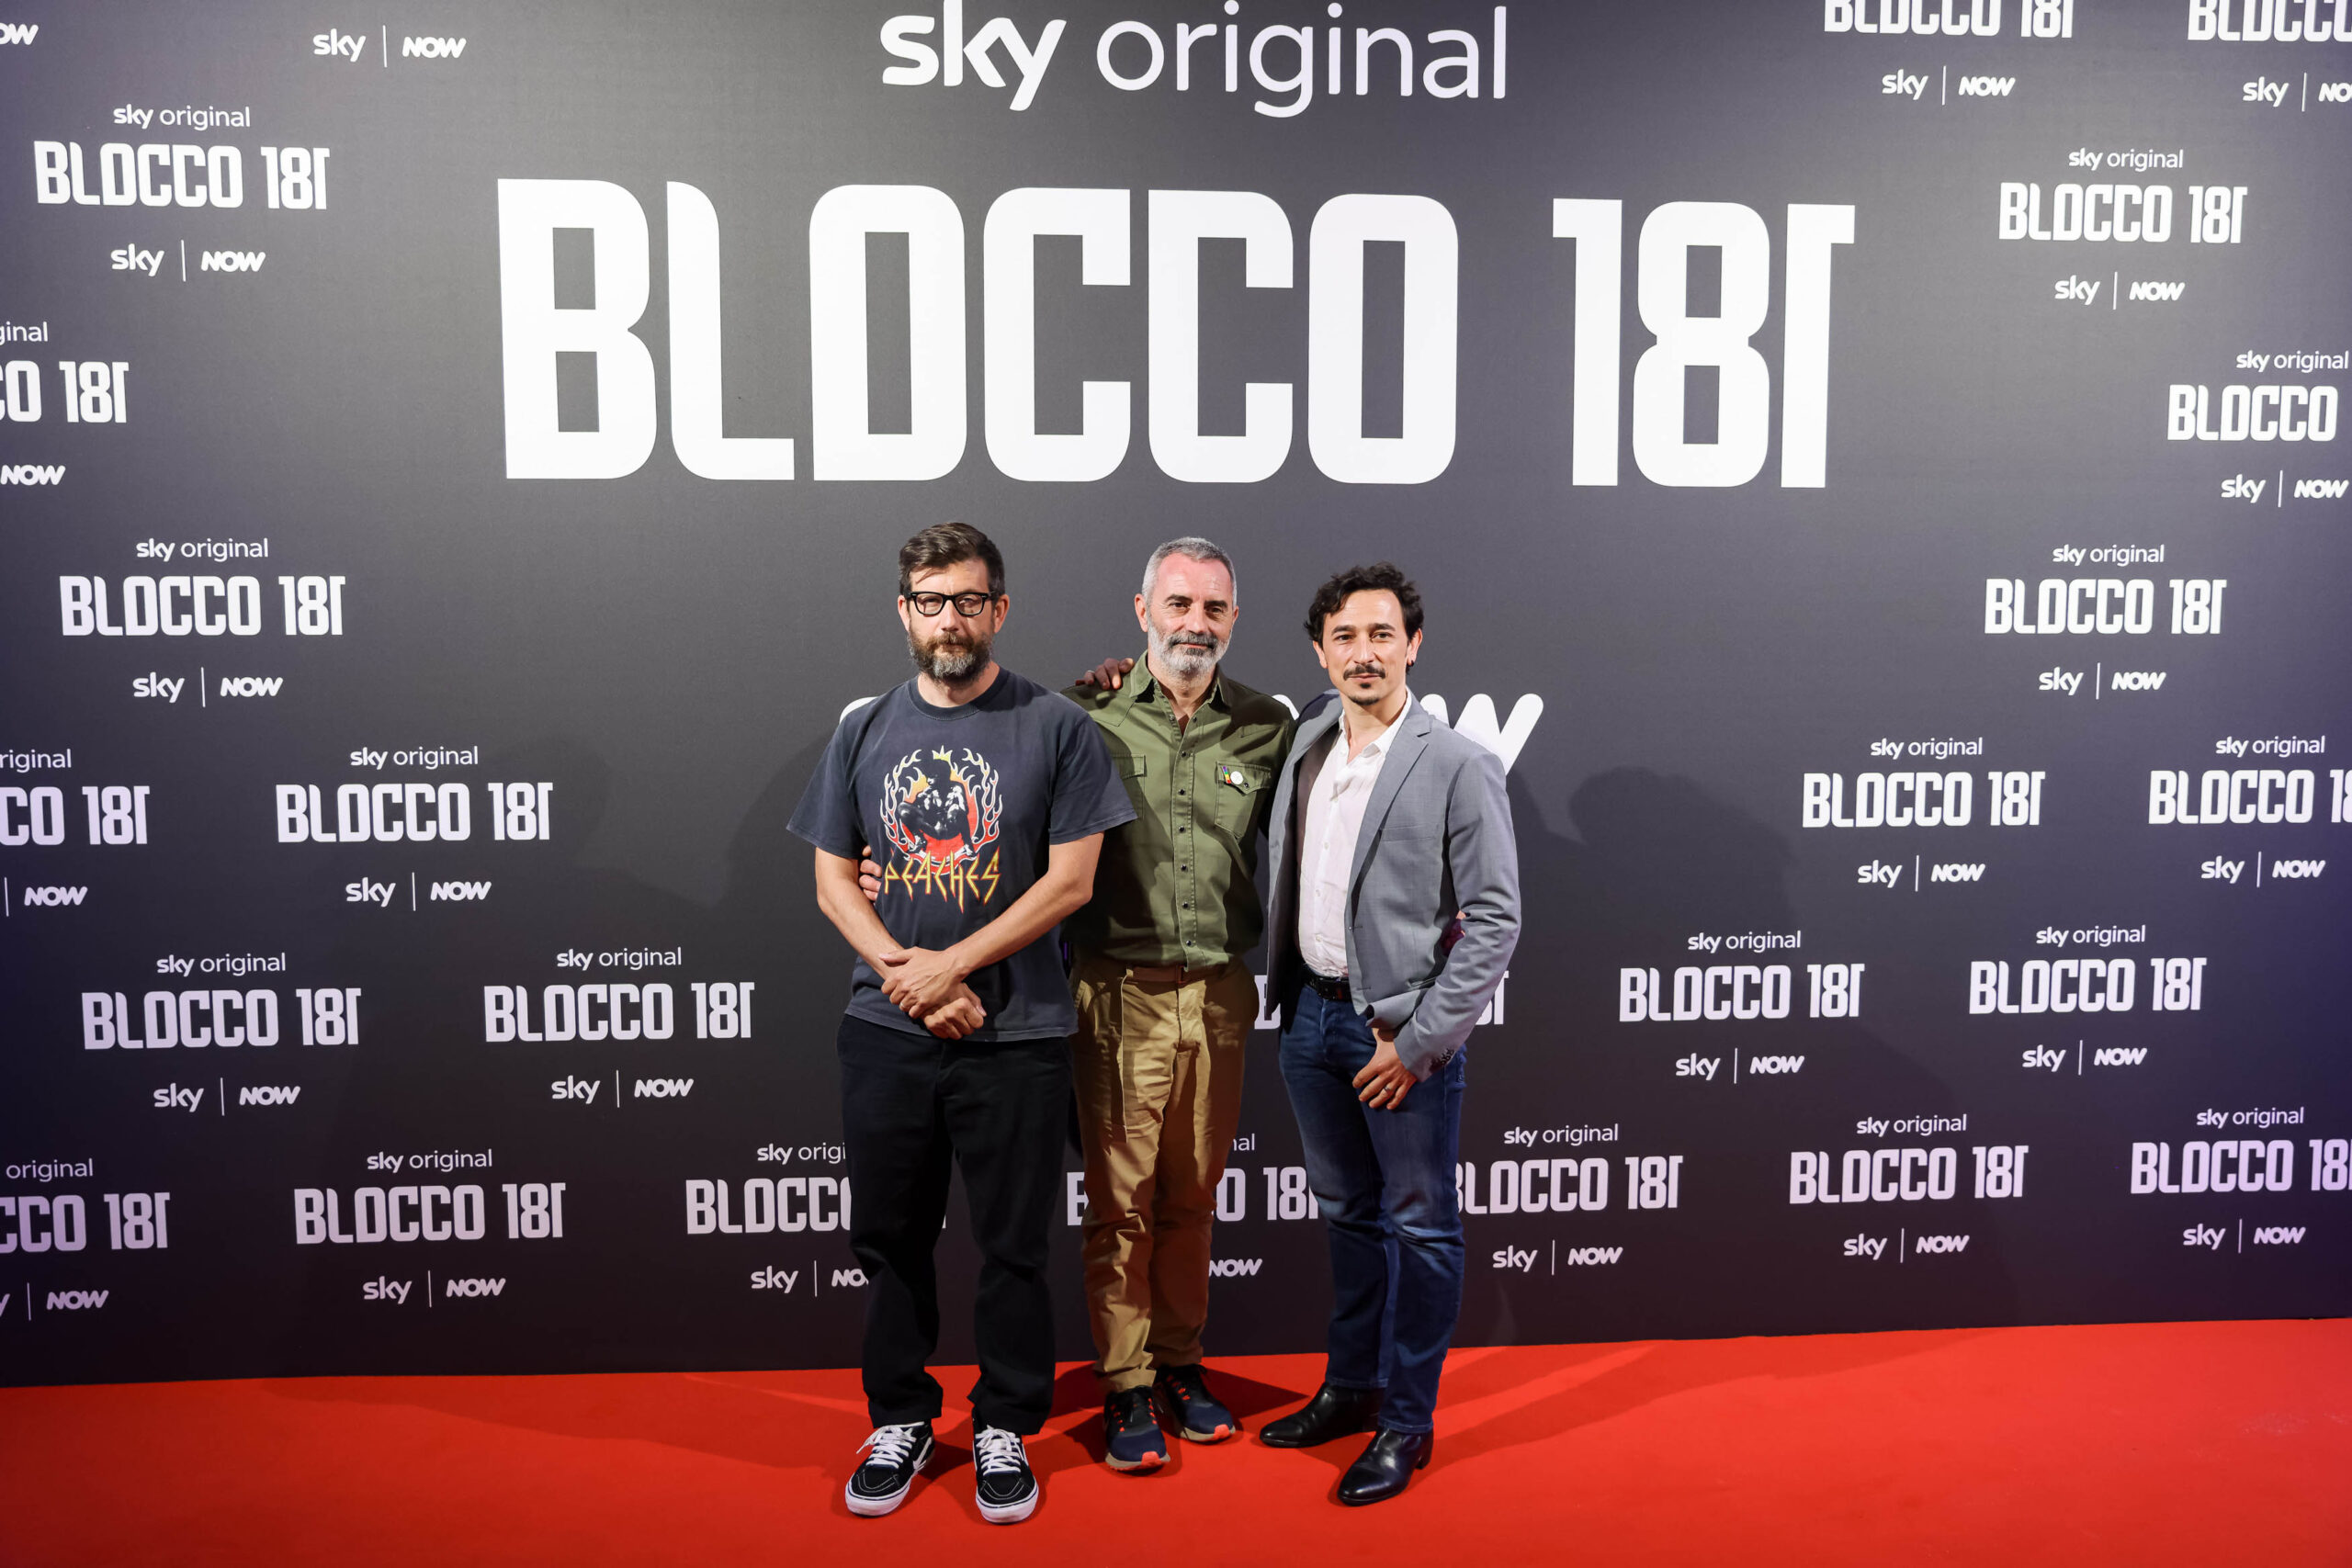 “Blocco 181”, la nuova serie TV ambientata a Milano – FOTOGALLERY